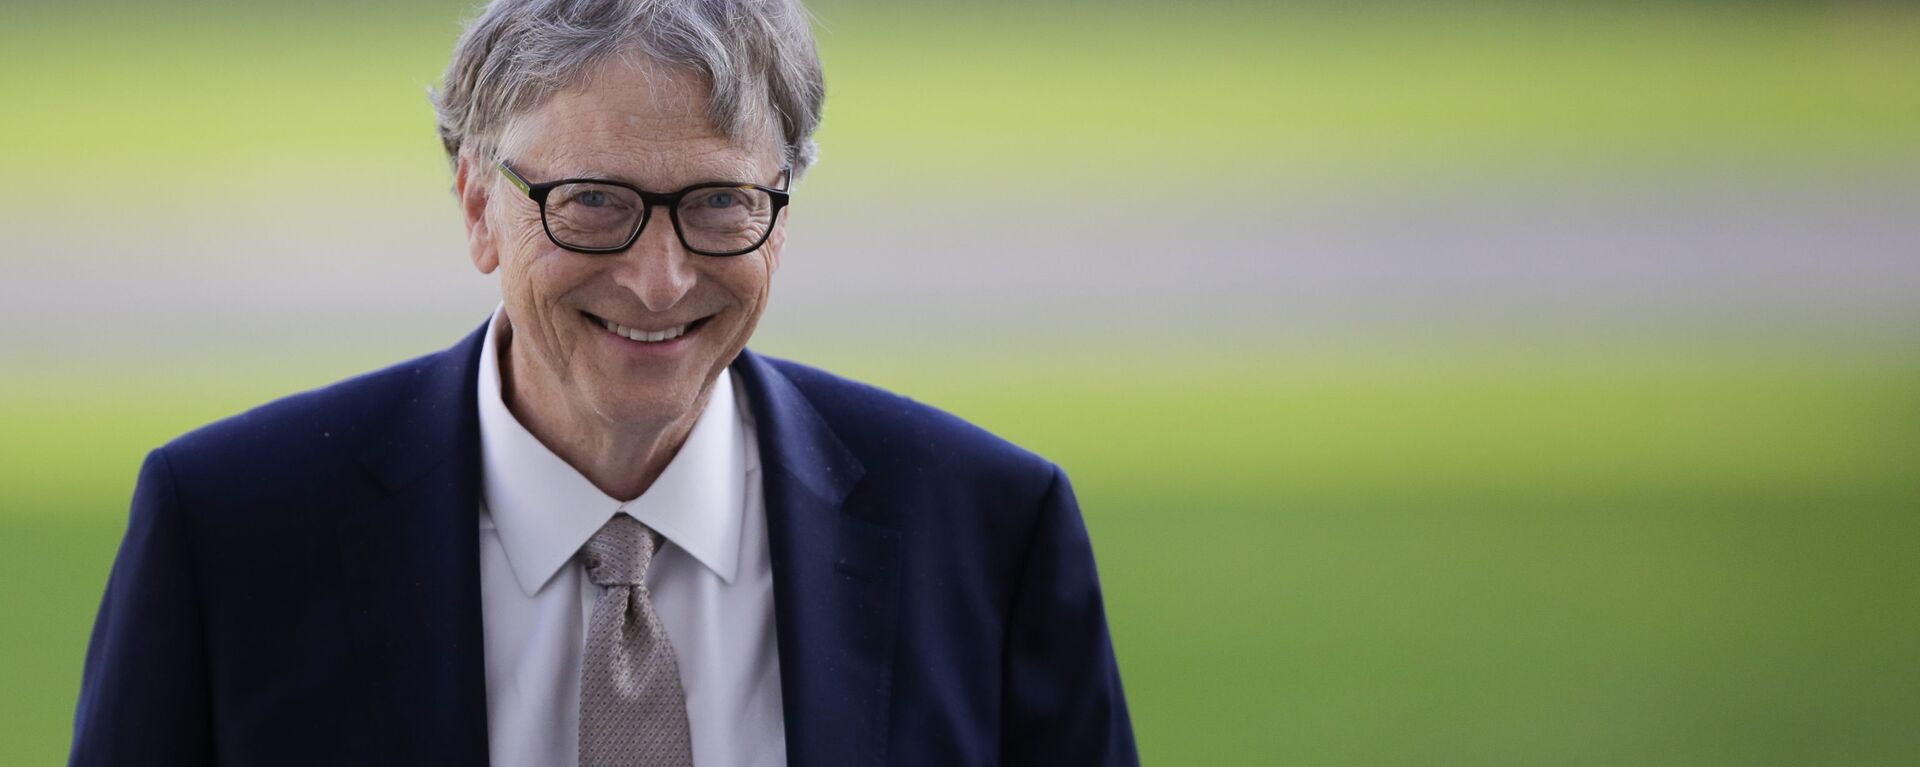 Bill Gates, fundador de Microsoft - Sputnik Mundo, 1920, 28.10.2020